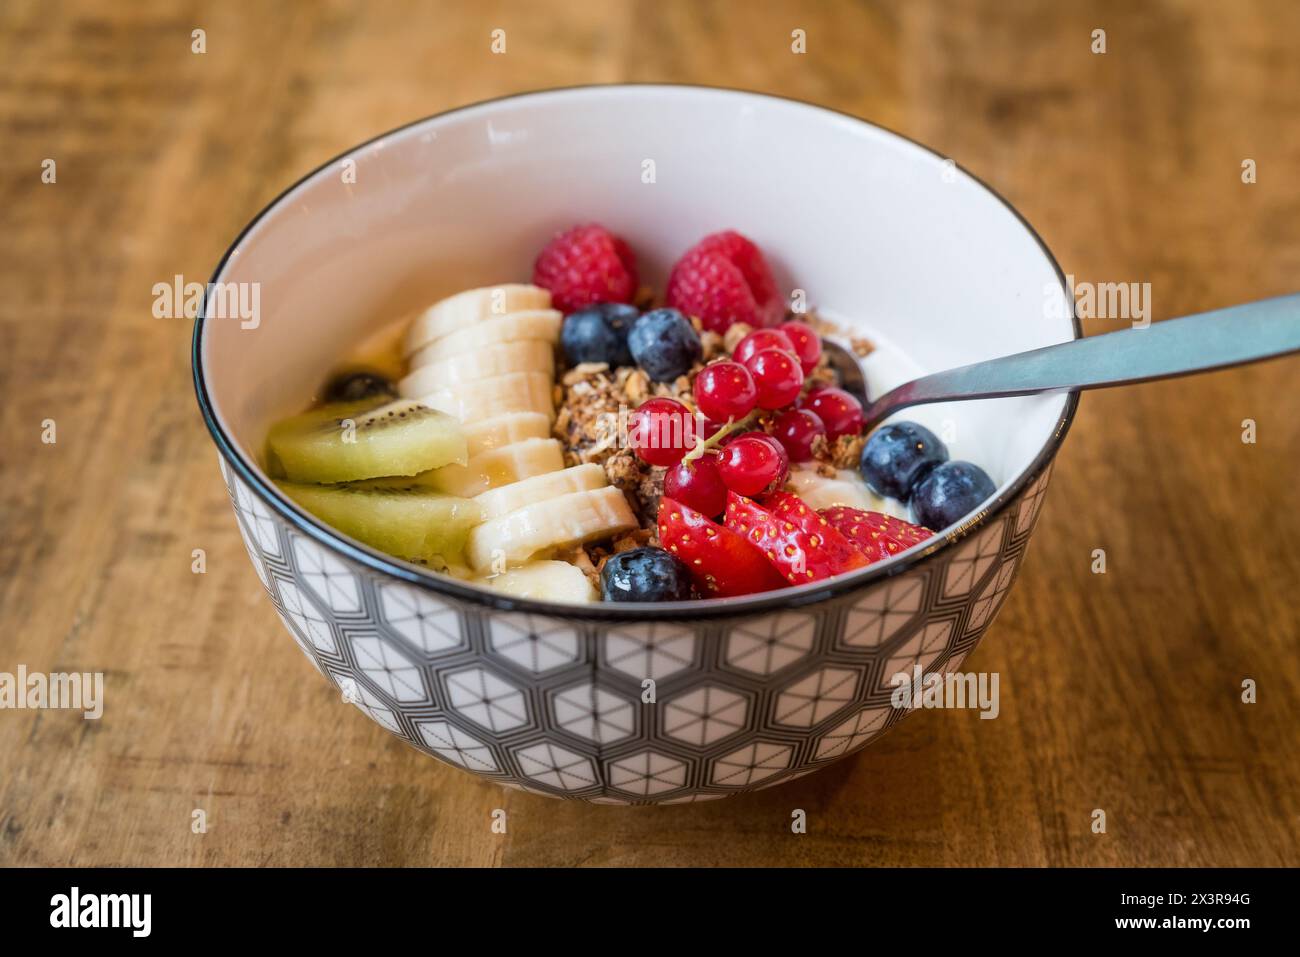 Bol de yaourt frais (yaourt) avec granola, baies d'été mélangées, banane et kiwi avec une cuillère sur une table en bois Banque D'Images